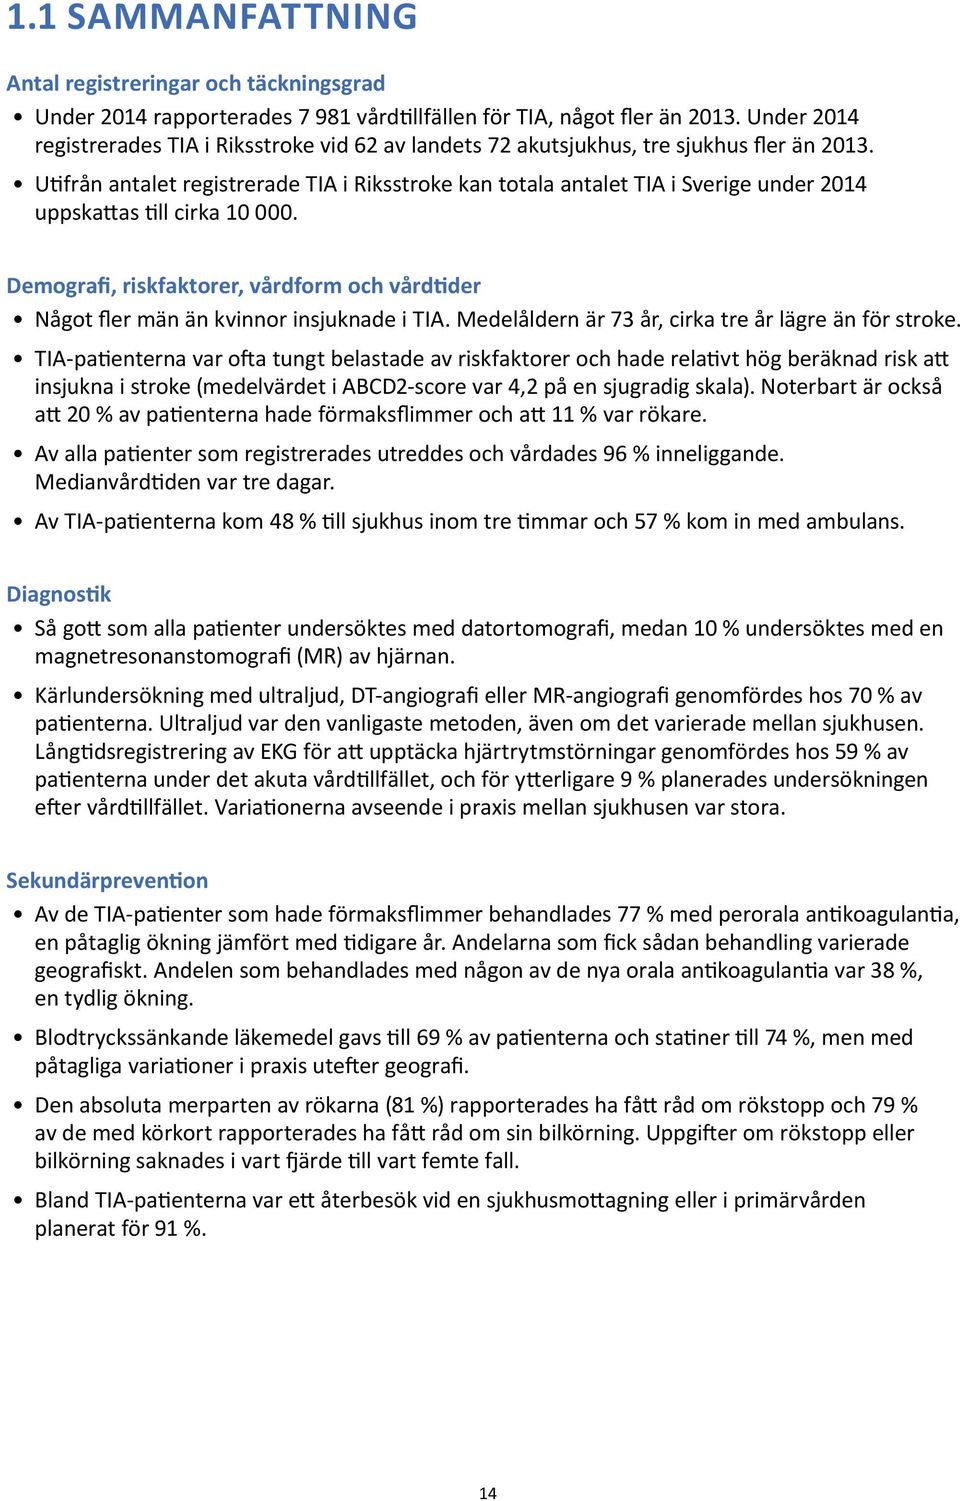 Utifrån antalet registrerade TIA i Riksstroke kan totala antalet TIA i Sverige under 2014 uppskattas till cirka 10 000.